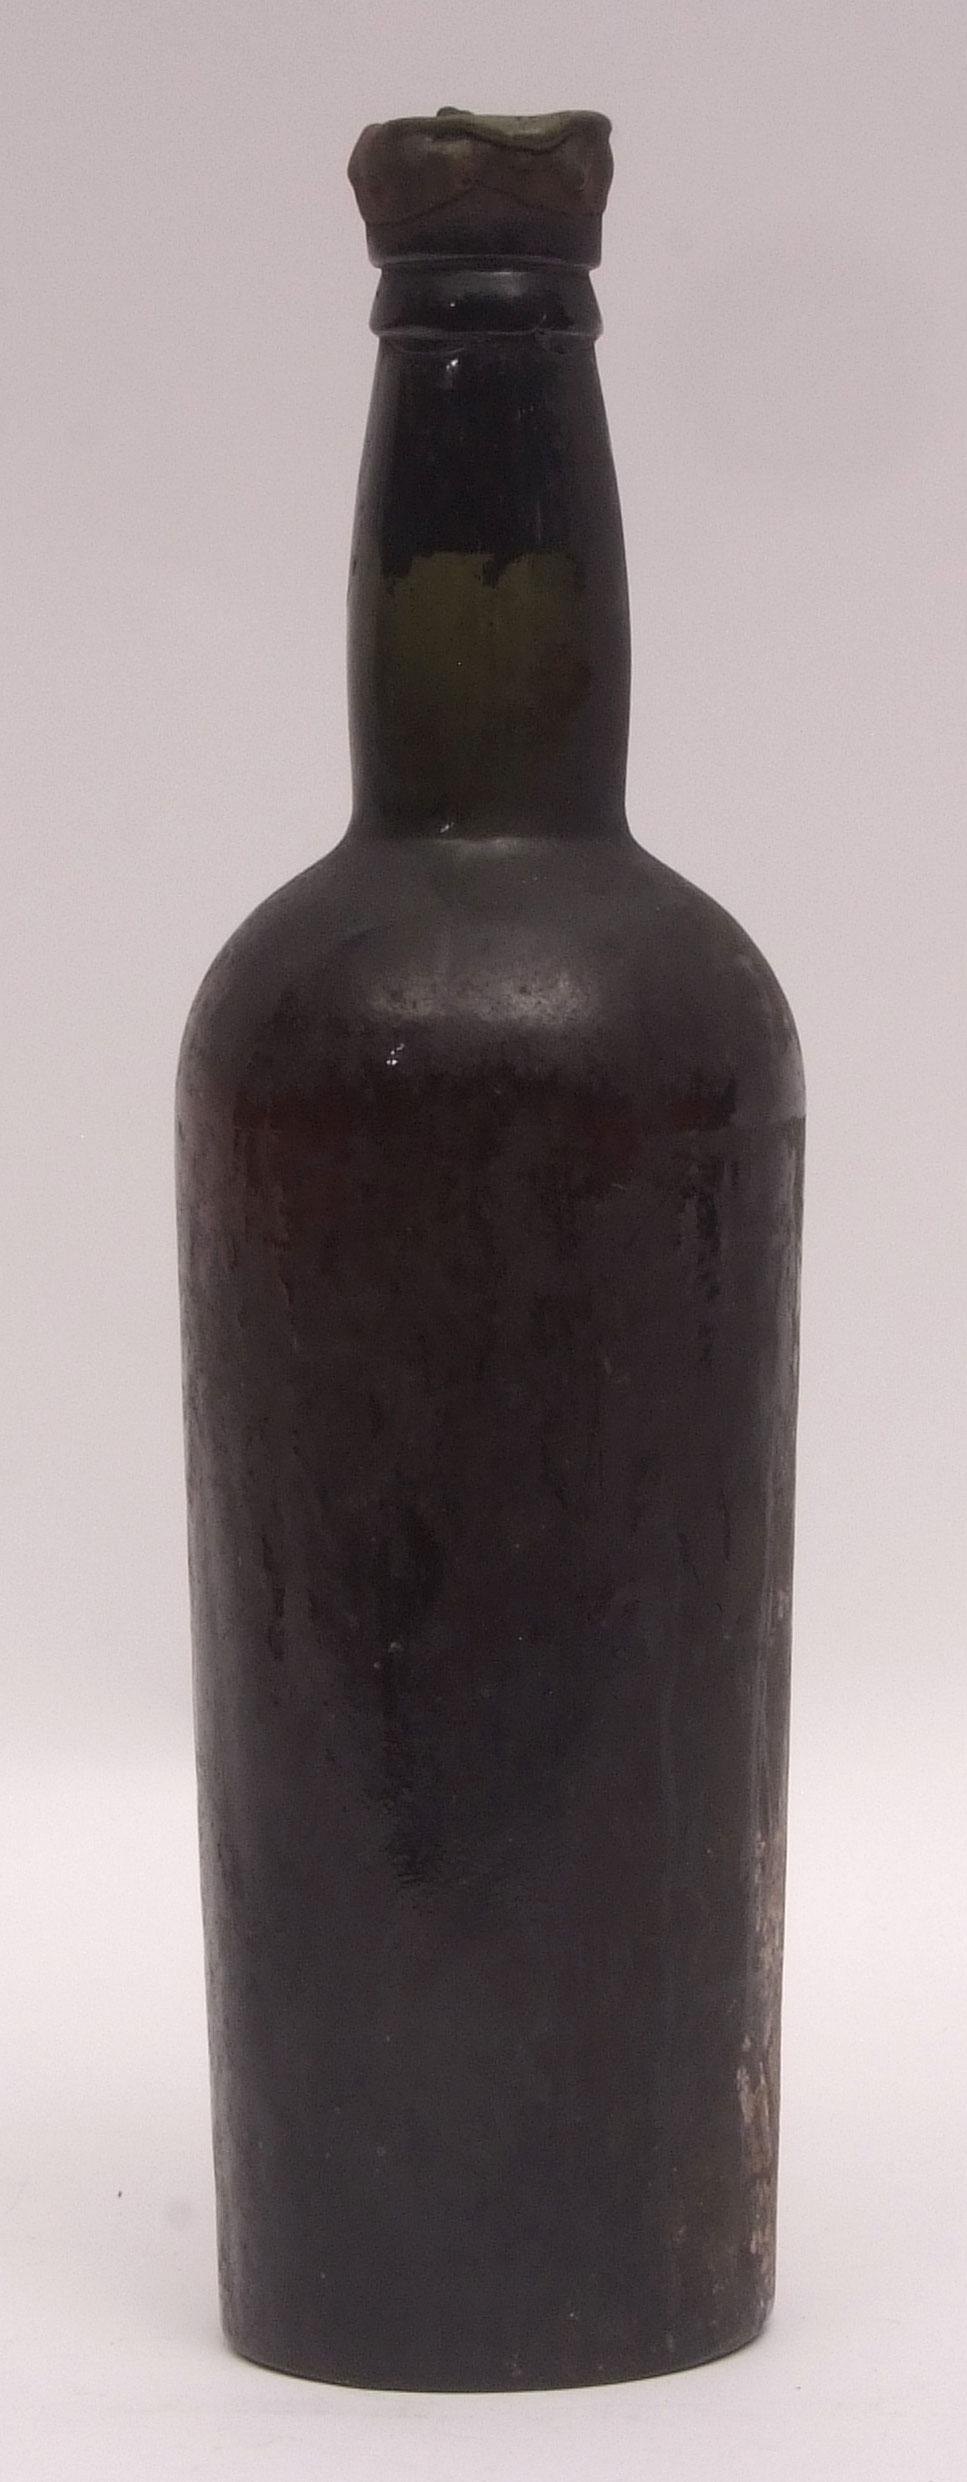 Sandemann Vintage Port 1931, (label missing but cap clearly marked), 1 bottle - Image 2 of 2